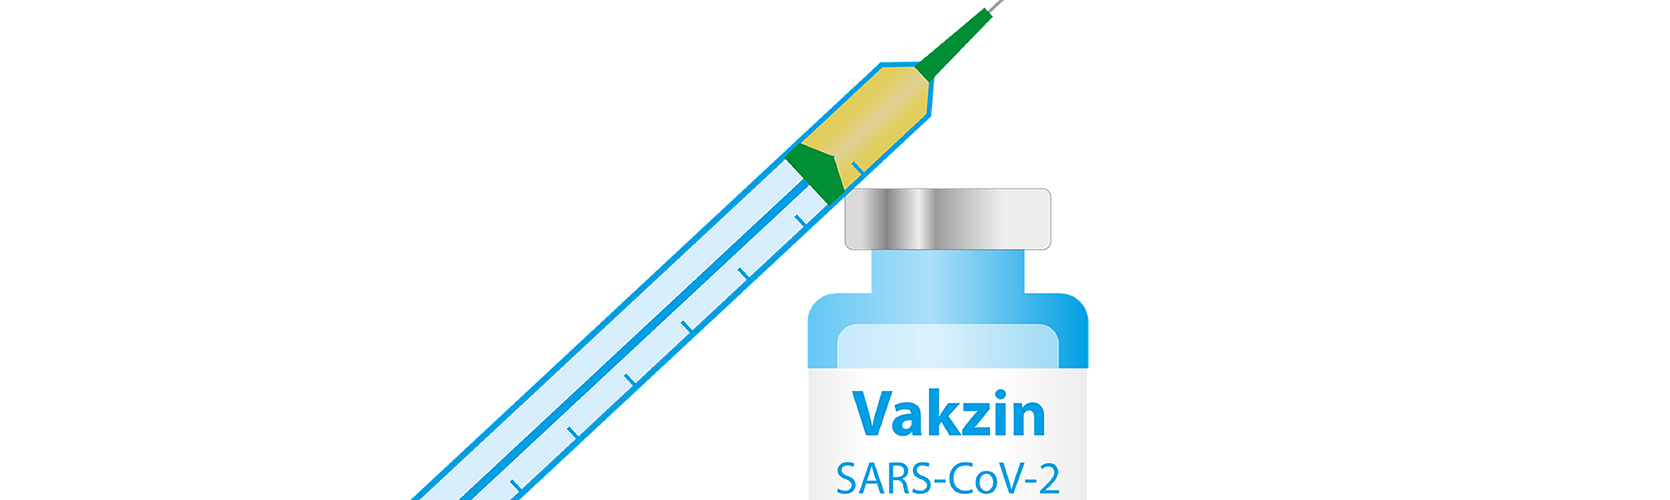 Spritze und Ampulle Vakzin SARS-CoV-2